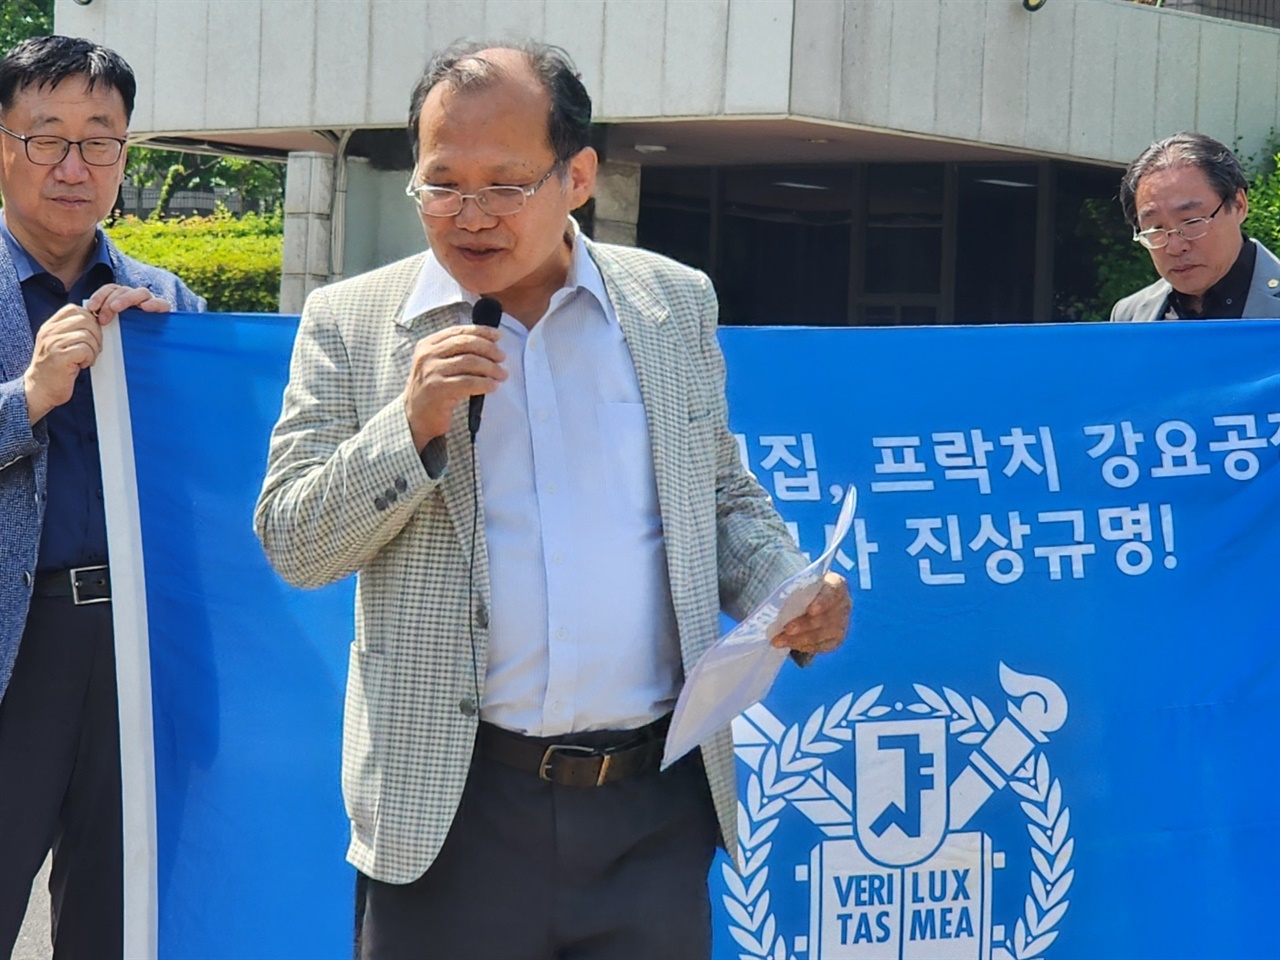 서울지법 청사 앞에서 열린 기자회견에서 박제호 강제징집녹화선도공작 피해자가 발언하고 있다.